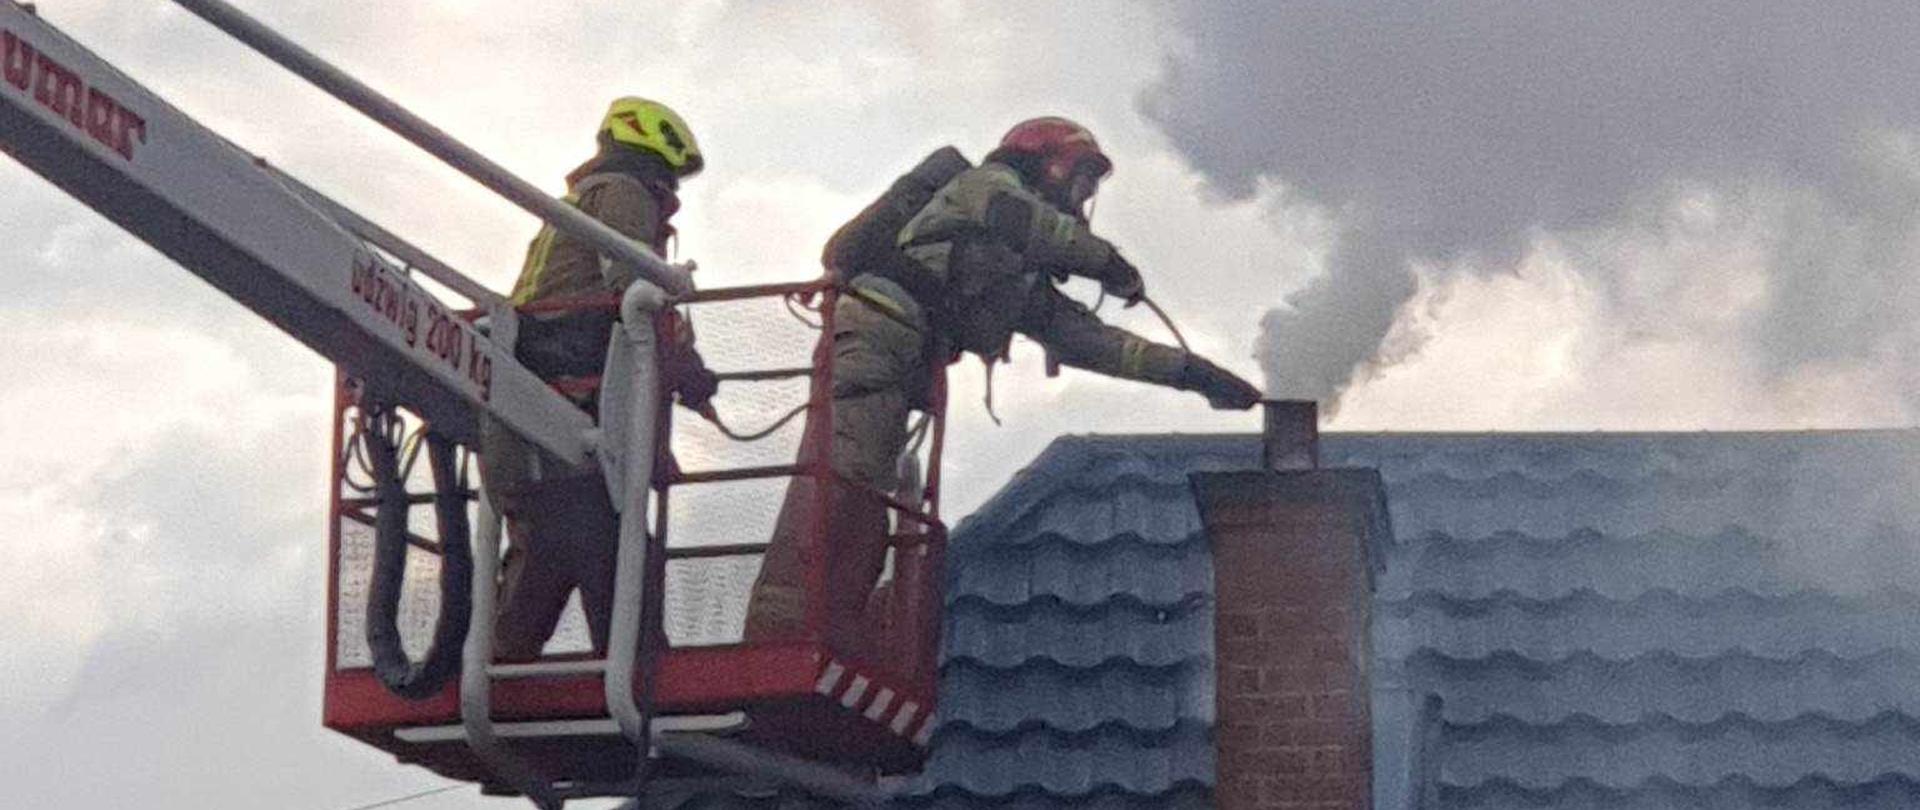 Zdjęcie przedstawia dwóch strażaków znajdujących się w koszu podnośnika. Kosz znajduje się w pobliżu dachu. Na dachu znajduje się komin z którego wydobywają się kłęby ciemnego dymu. Strażacy próbują ugasić pożar sadzy w kominie. Ubrani są w ubrania specjalne w jasnym kolorze. Na głowach mają hełmy w kolorze czerwonym oraz żółtym. Jeden ze strażaków na twarzy dodatkowo ma założoną maskę ochronną połączoną przewodem z butlą z powietrzem znajdującą się na jego plecach. 